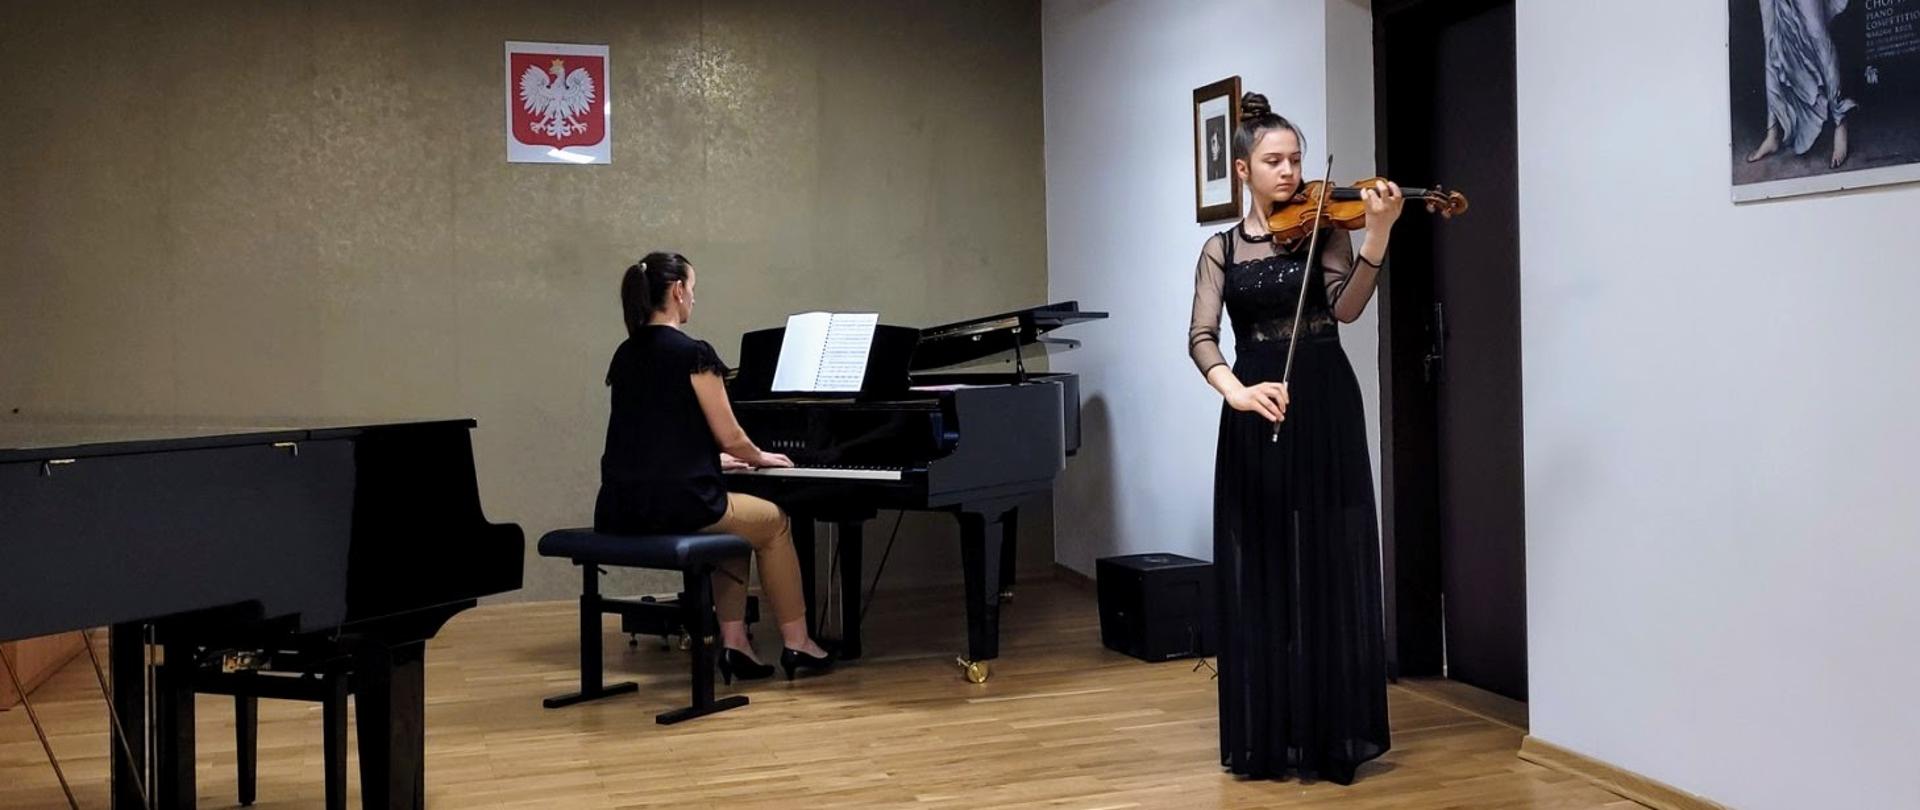 Po lewej stronie zdjęcia widać akompaniatorkę grającą na fortepianie. Po prawej widać dziewczynę w czarnej sukience grającą na skrzypcach. Sytuacja ma miejsce w sali koncertowej szkoły.